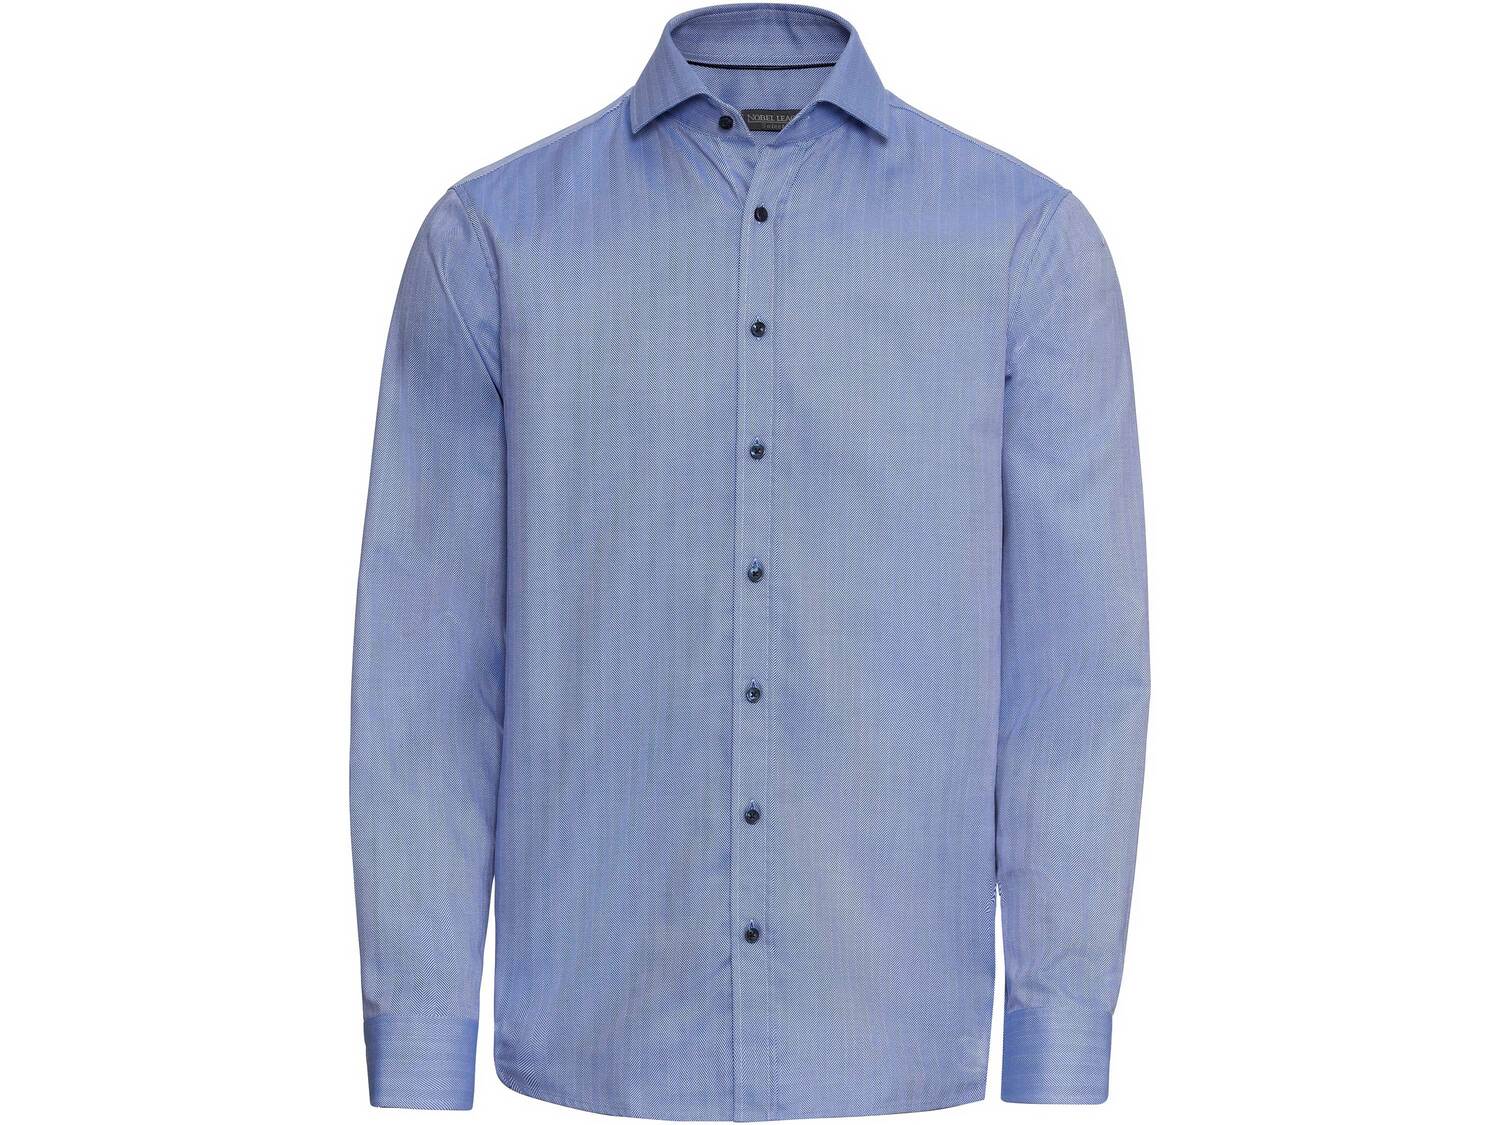 Koszula , cena 49,99 PLN 
- 100% bawełny
- rozmiary: 39-42
- slim fit - krój ...